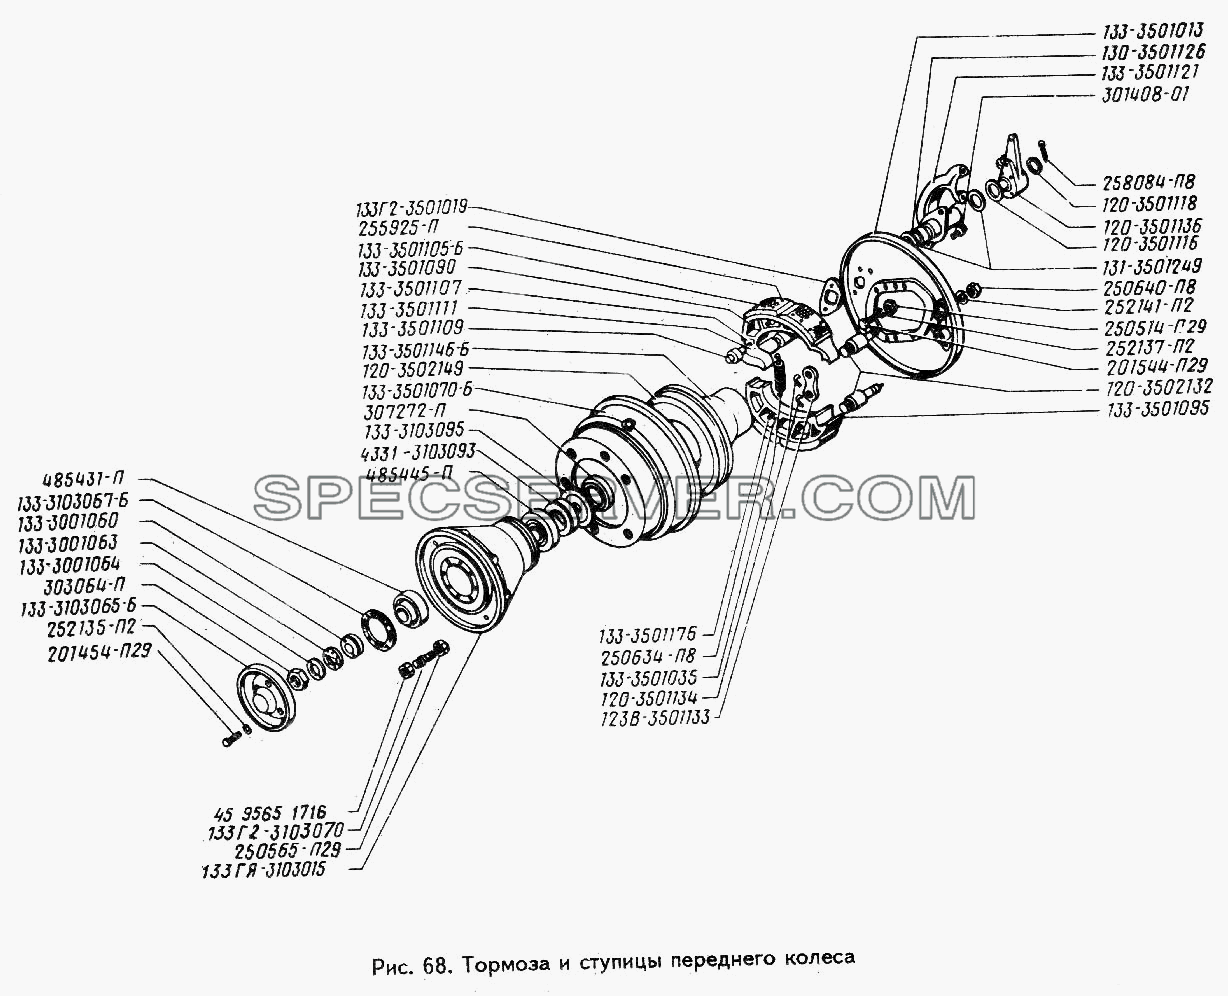 Тормоза и ступицы переднего колеса для ЗИЛ 433360 (список запасных частей)